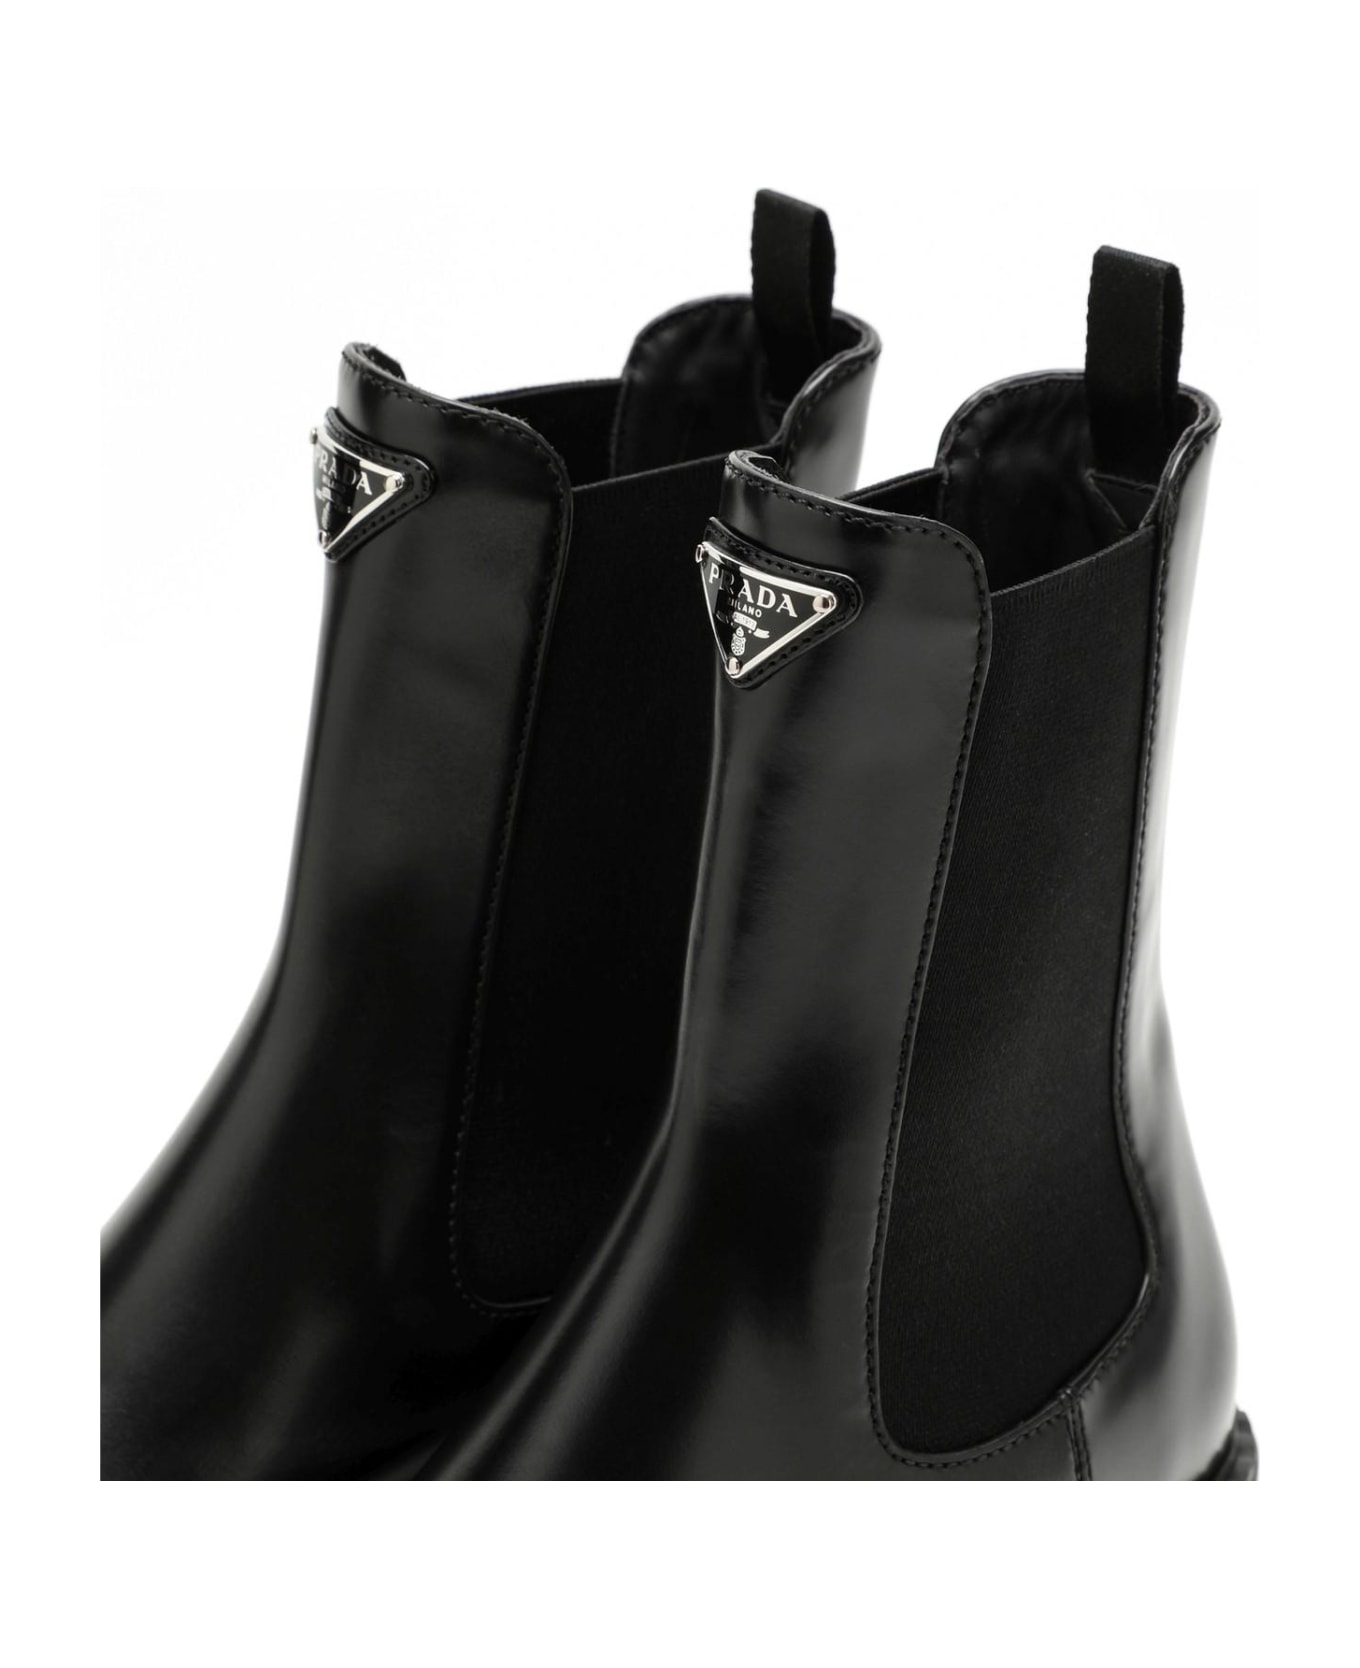 Prada Black Leather Beatles Boot - Nero